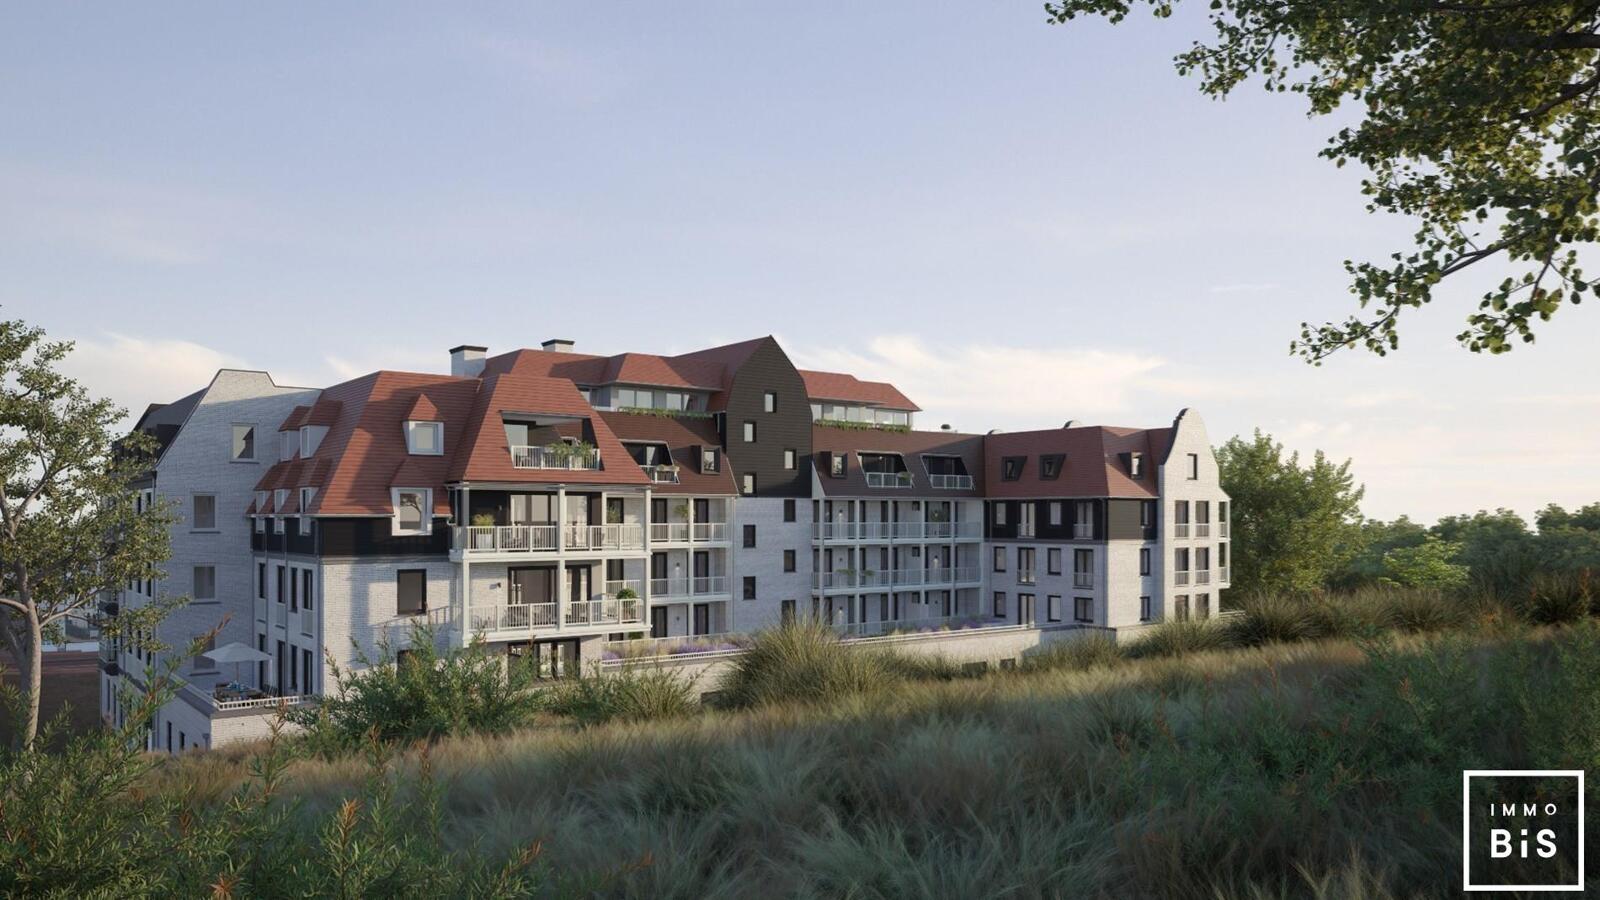 " Appartement villa moderne avec terrasse sur la Digue à Cadzand - Résidence Duinhof-Noord " 1